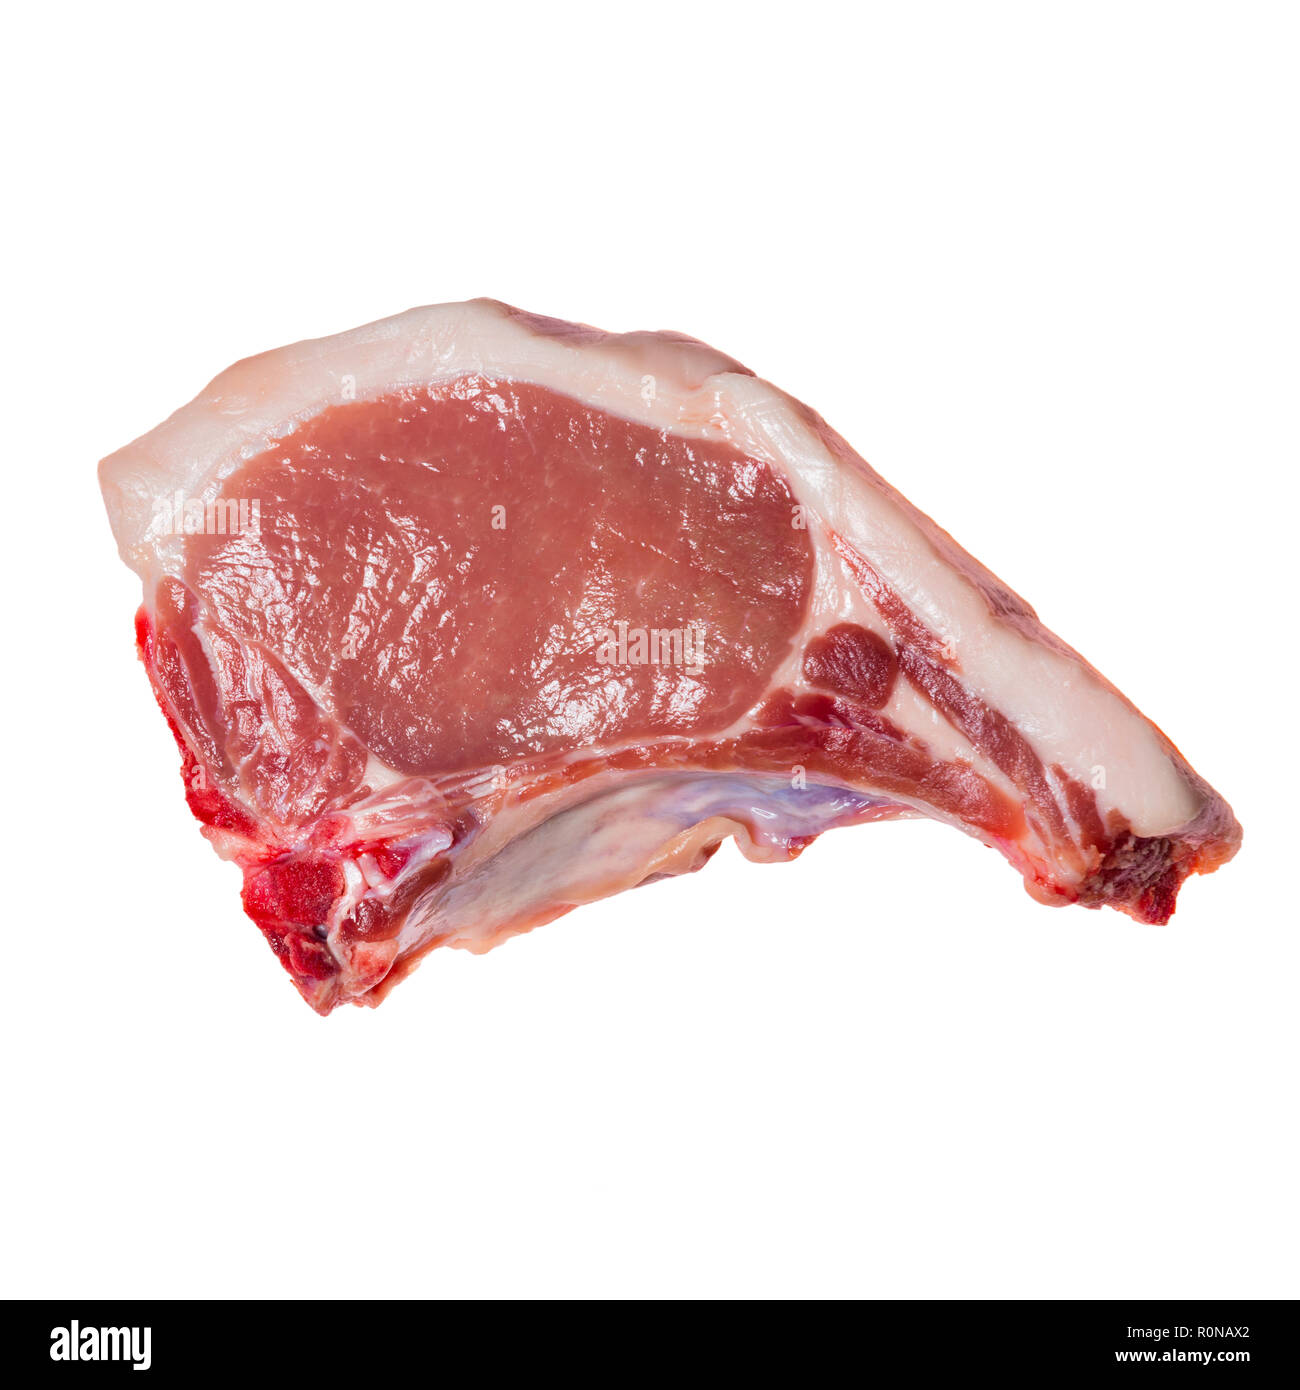 Côtelette de porc traditionnel d'un farm shop Butcher, UK. Hacher la viande non cuite à partir de ci-dessus, sur un fond blanc. Banque D'Images